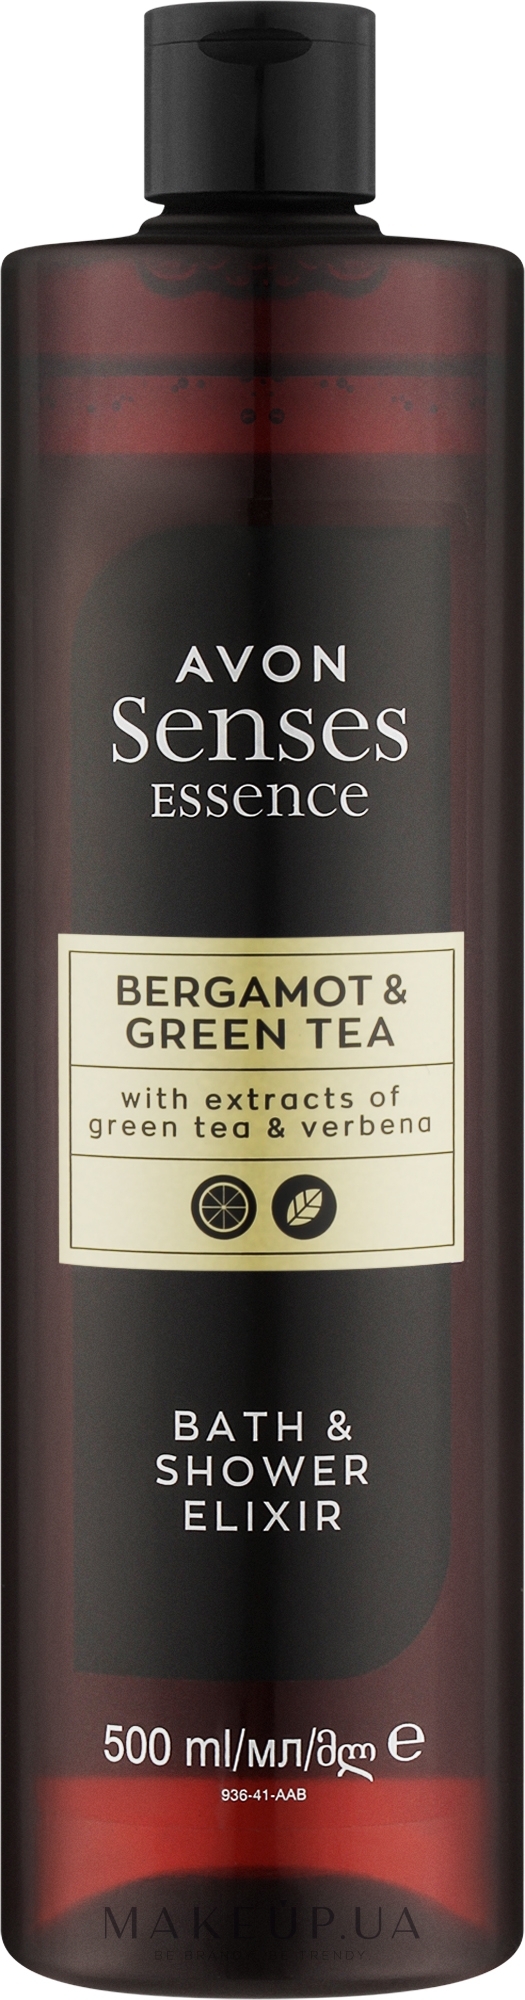 Еліксир для ванни та душу "Бергамот і зелений чай" - Avon Senses Essence Bergamot & Green Tea Bath & Shower Elixir — фото 500ml